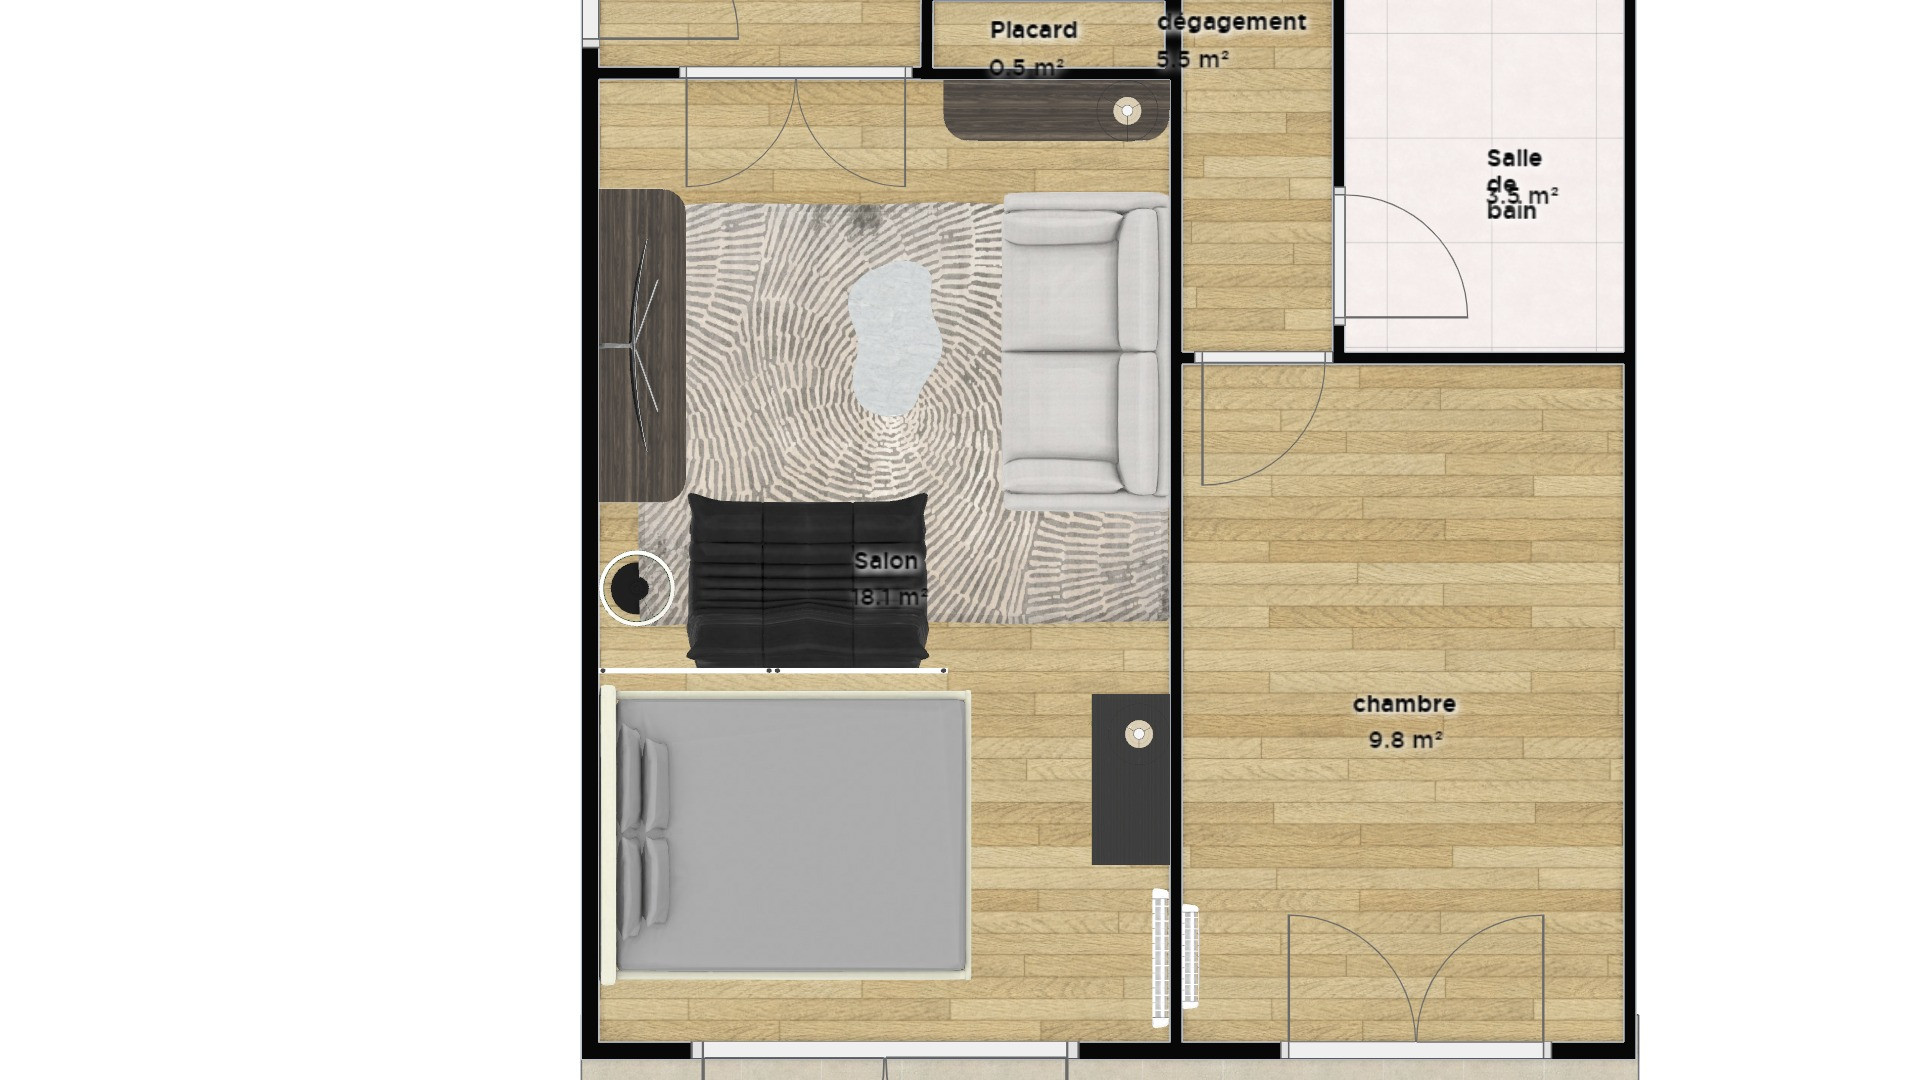 Rénovation et nouvelle distribution des espaces d'un appartement 3 pièces